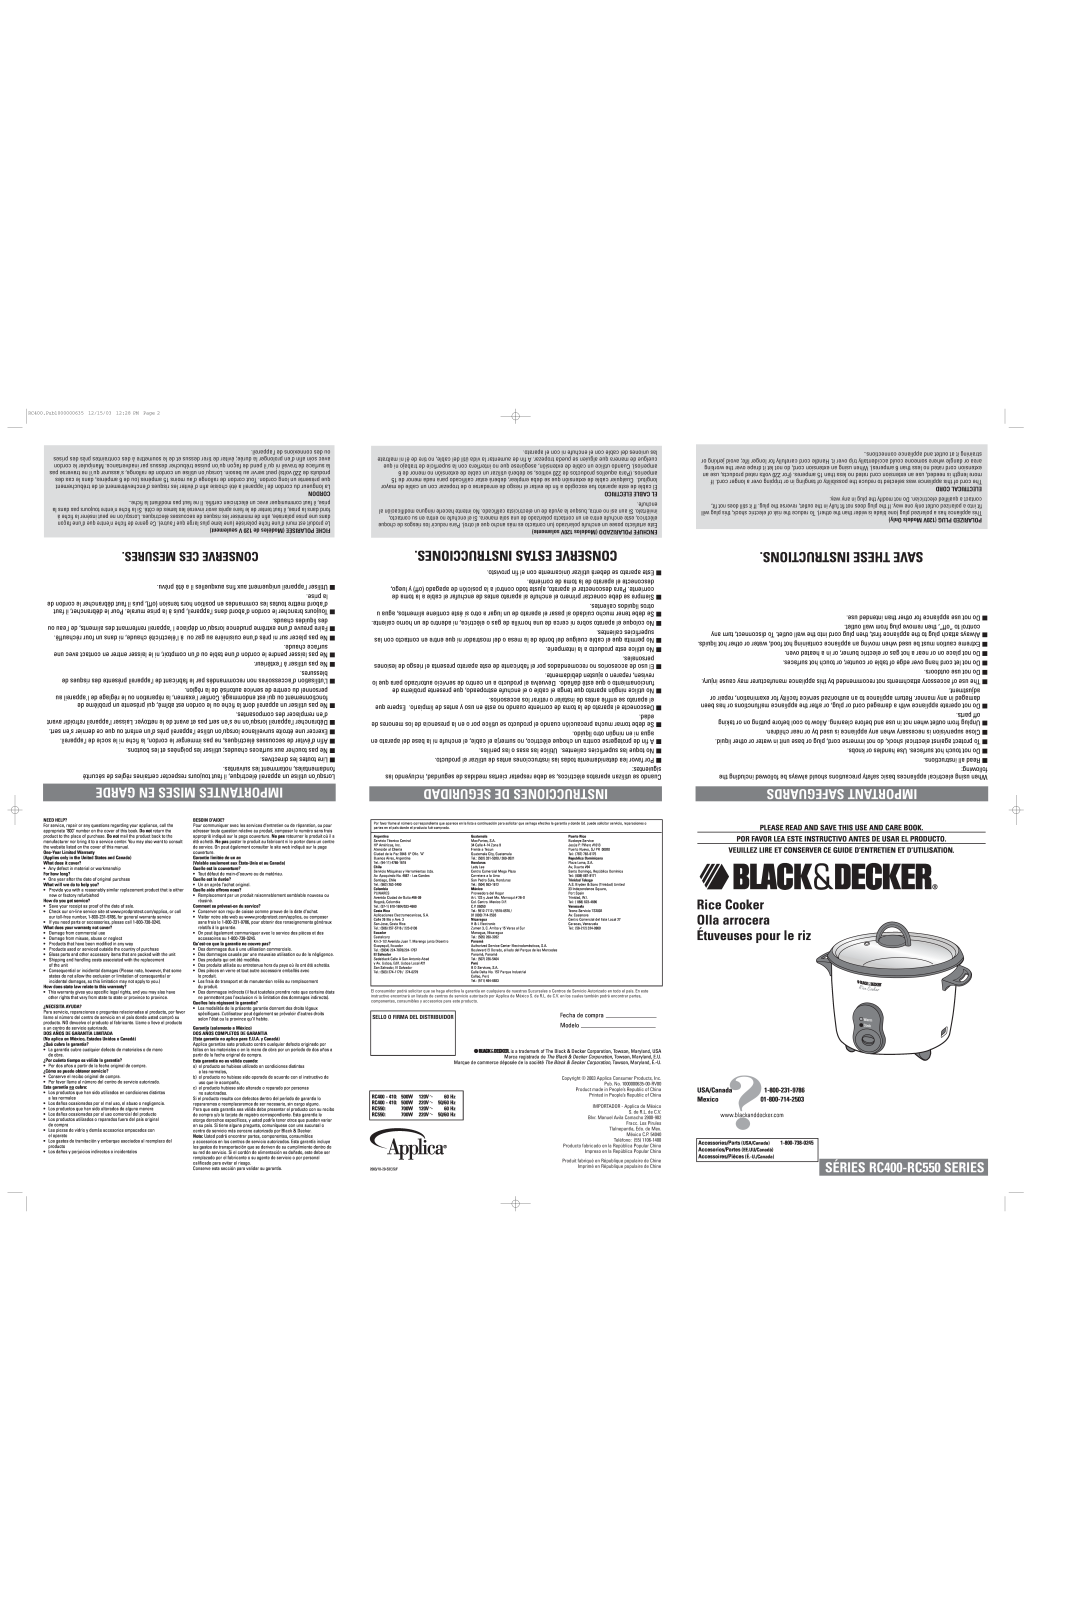 Black & Decker RC400 Please Read And Save This Use And Care Book, Por Favor Lea Este Instructivo Antes De Usar El Producto 